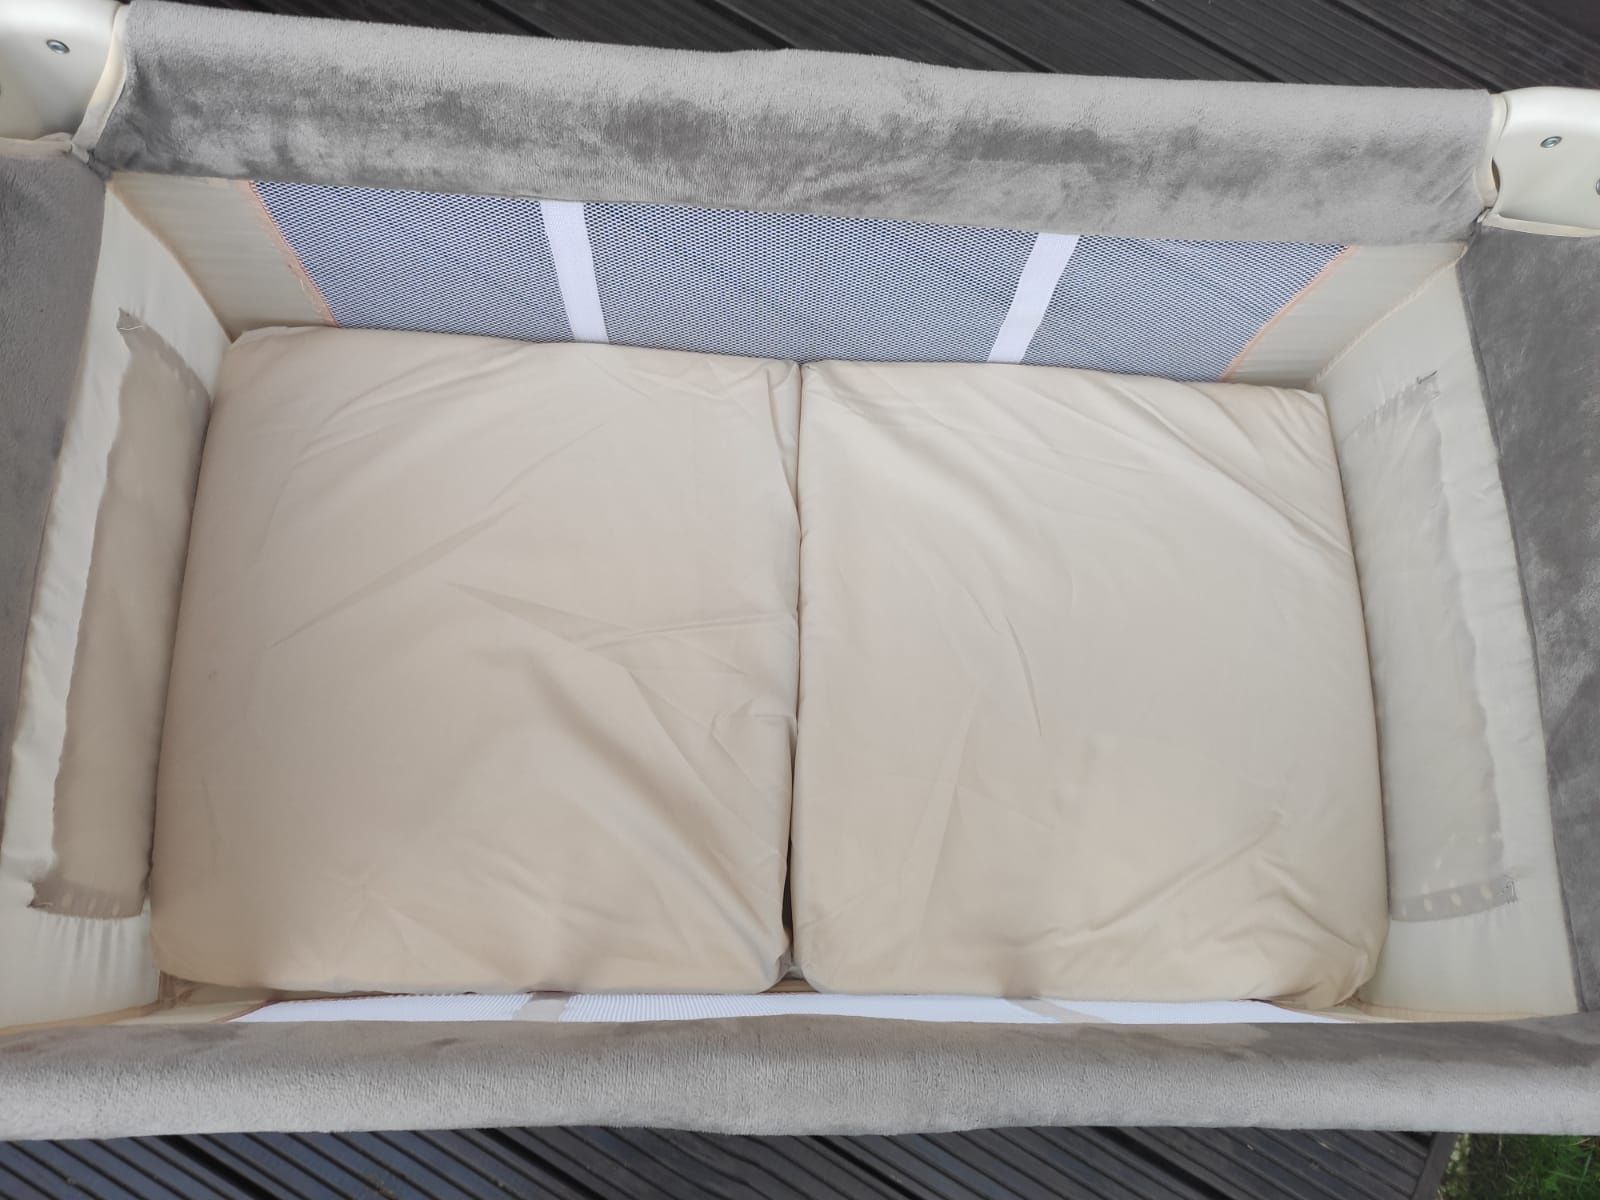 Małe łóżeczko turystyczne Hauck, dostawka i materac